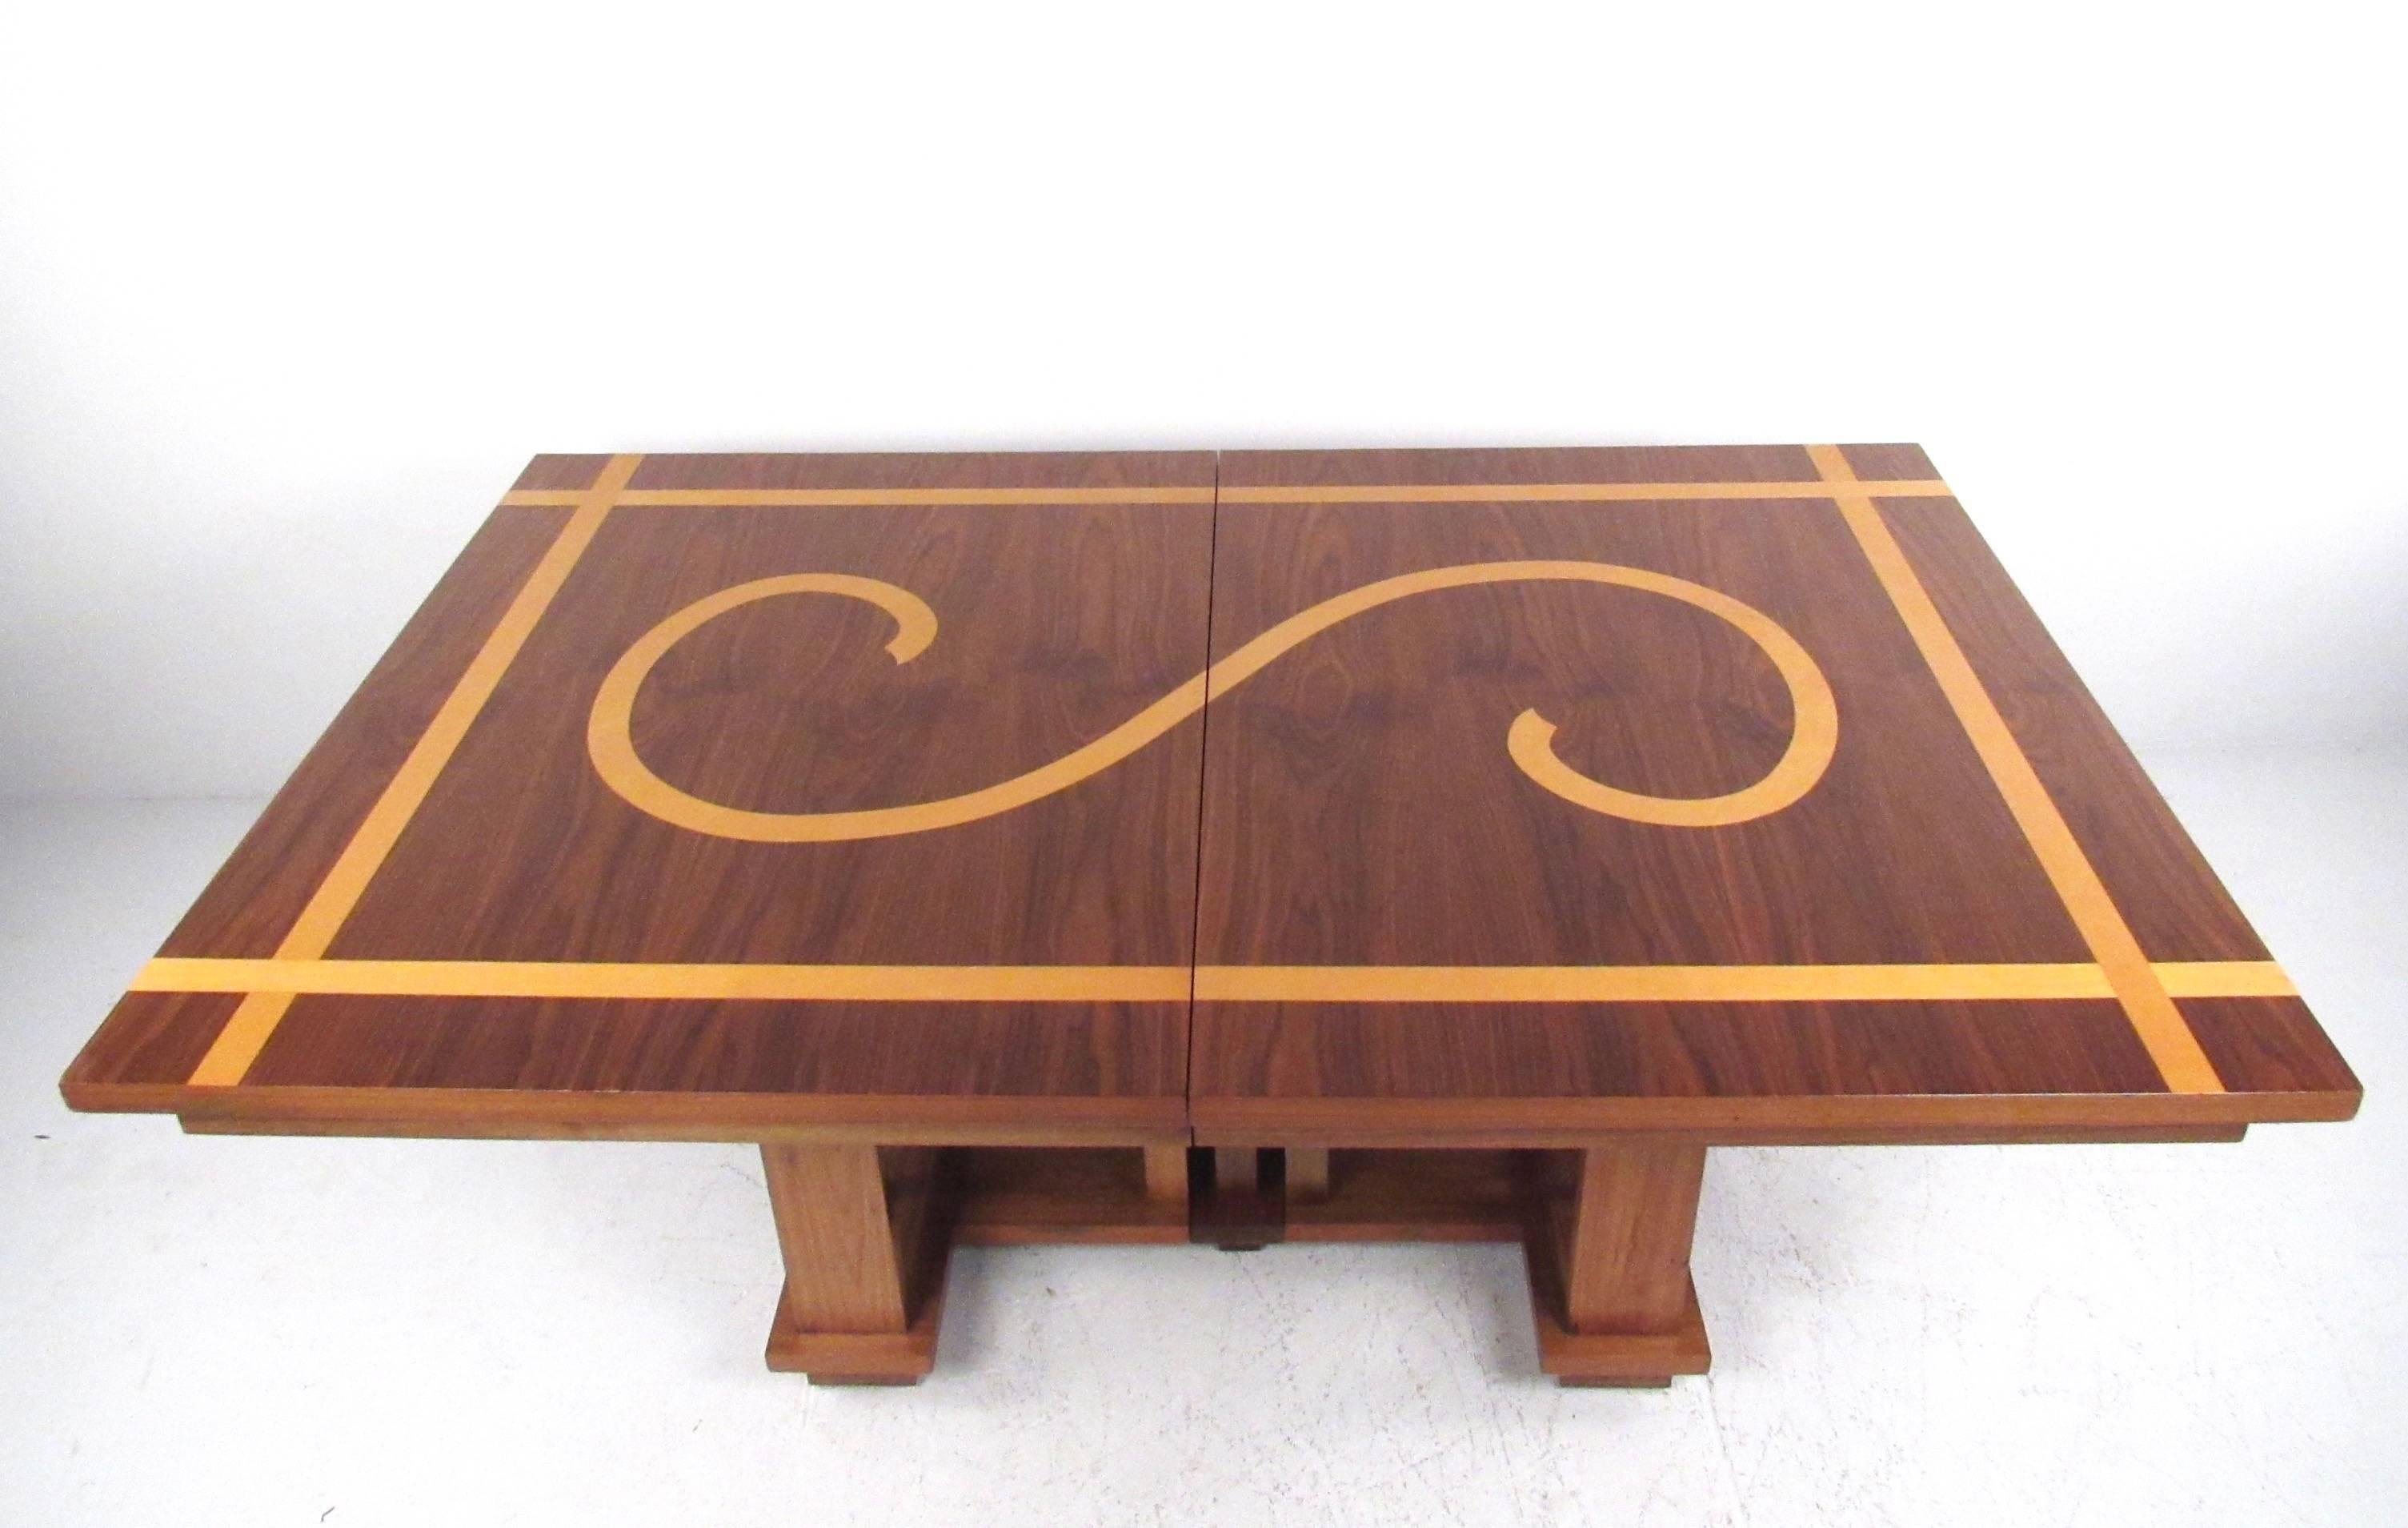 Dieser moderne Esstisch im Vintage-Stil zeichnet sich durch einen Tisch aus edlem Hartholz mit dekorativer Eicheneinlage aus. Der Tisch lässt sich von 70,25 B auf vier zusätzliche Platten erweitern, so dass er doppelt so groß wird wie der